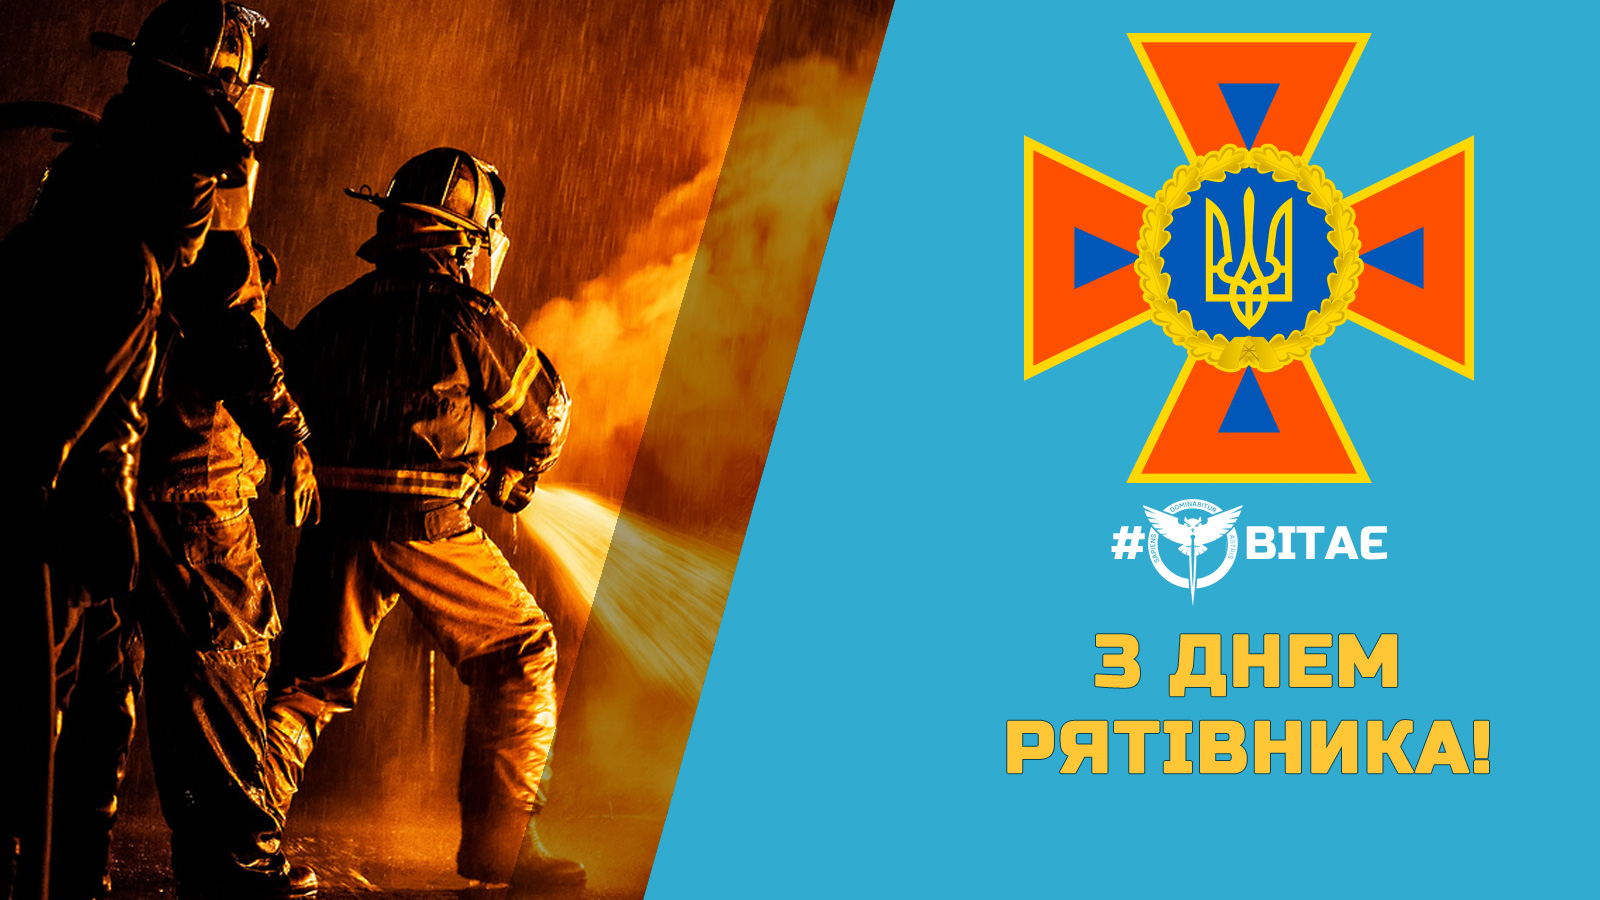 Сьогодні, 17 вересня, в Україні відзначають День рятівника!